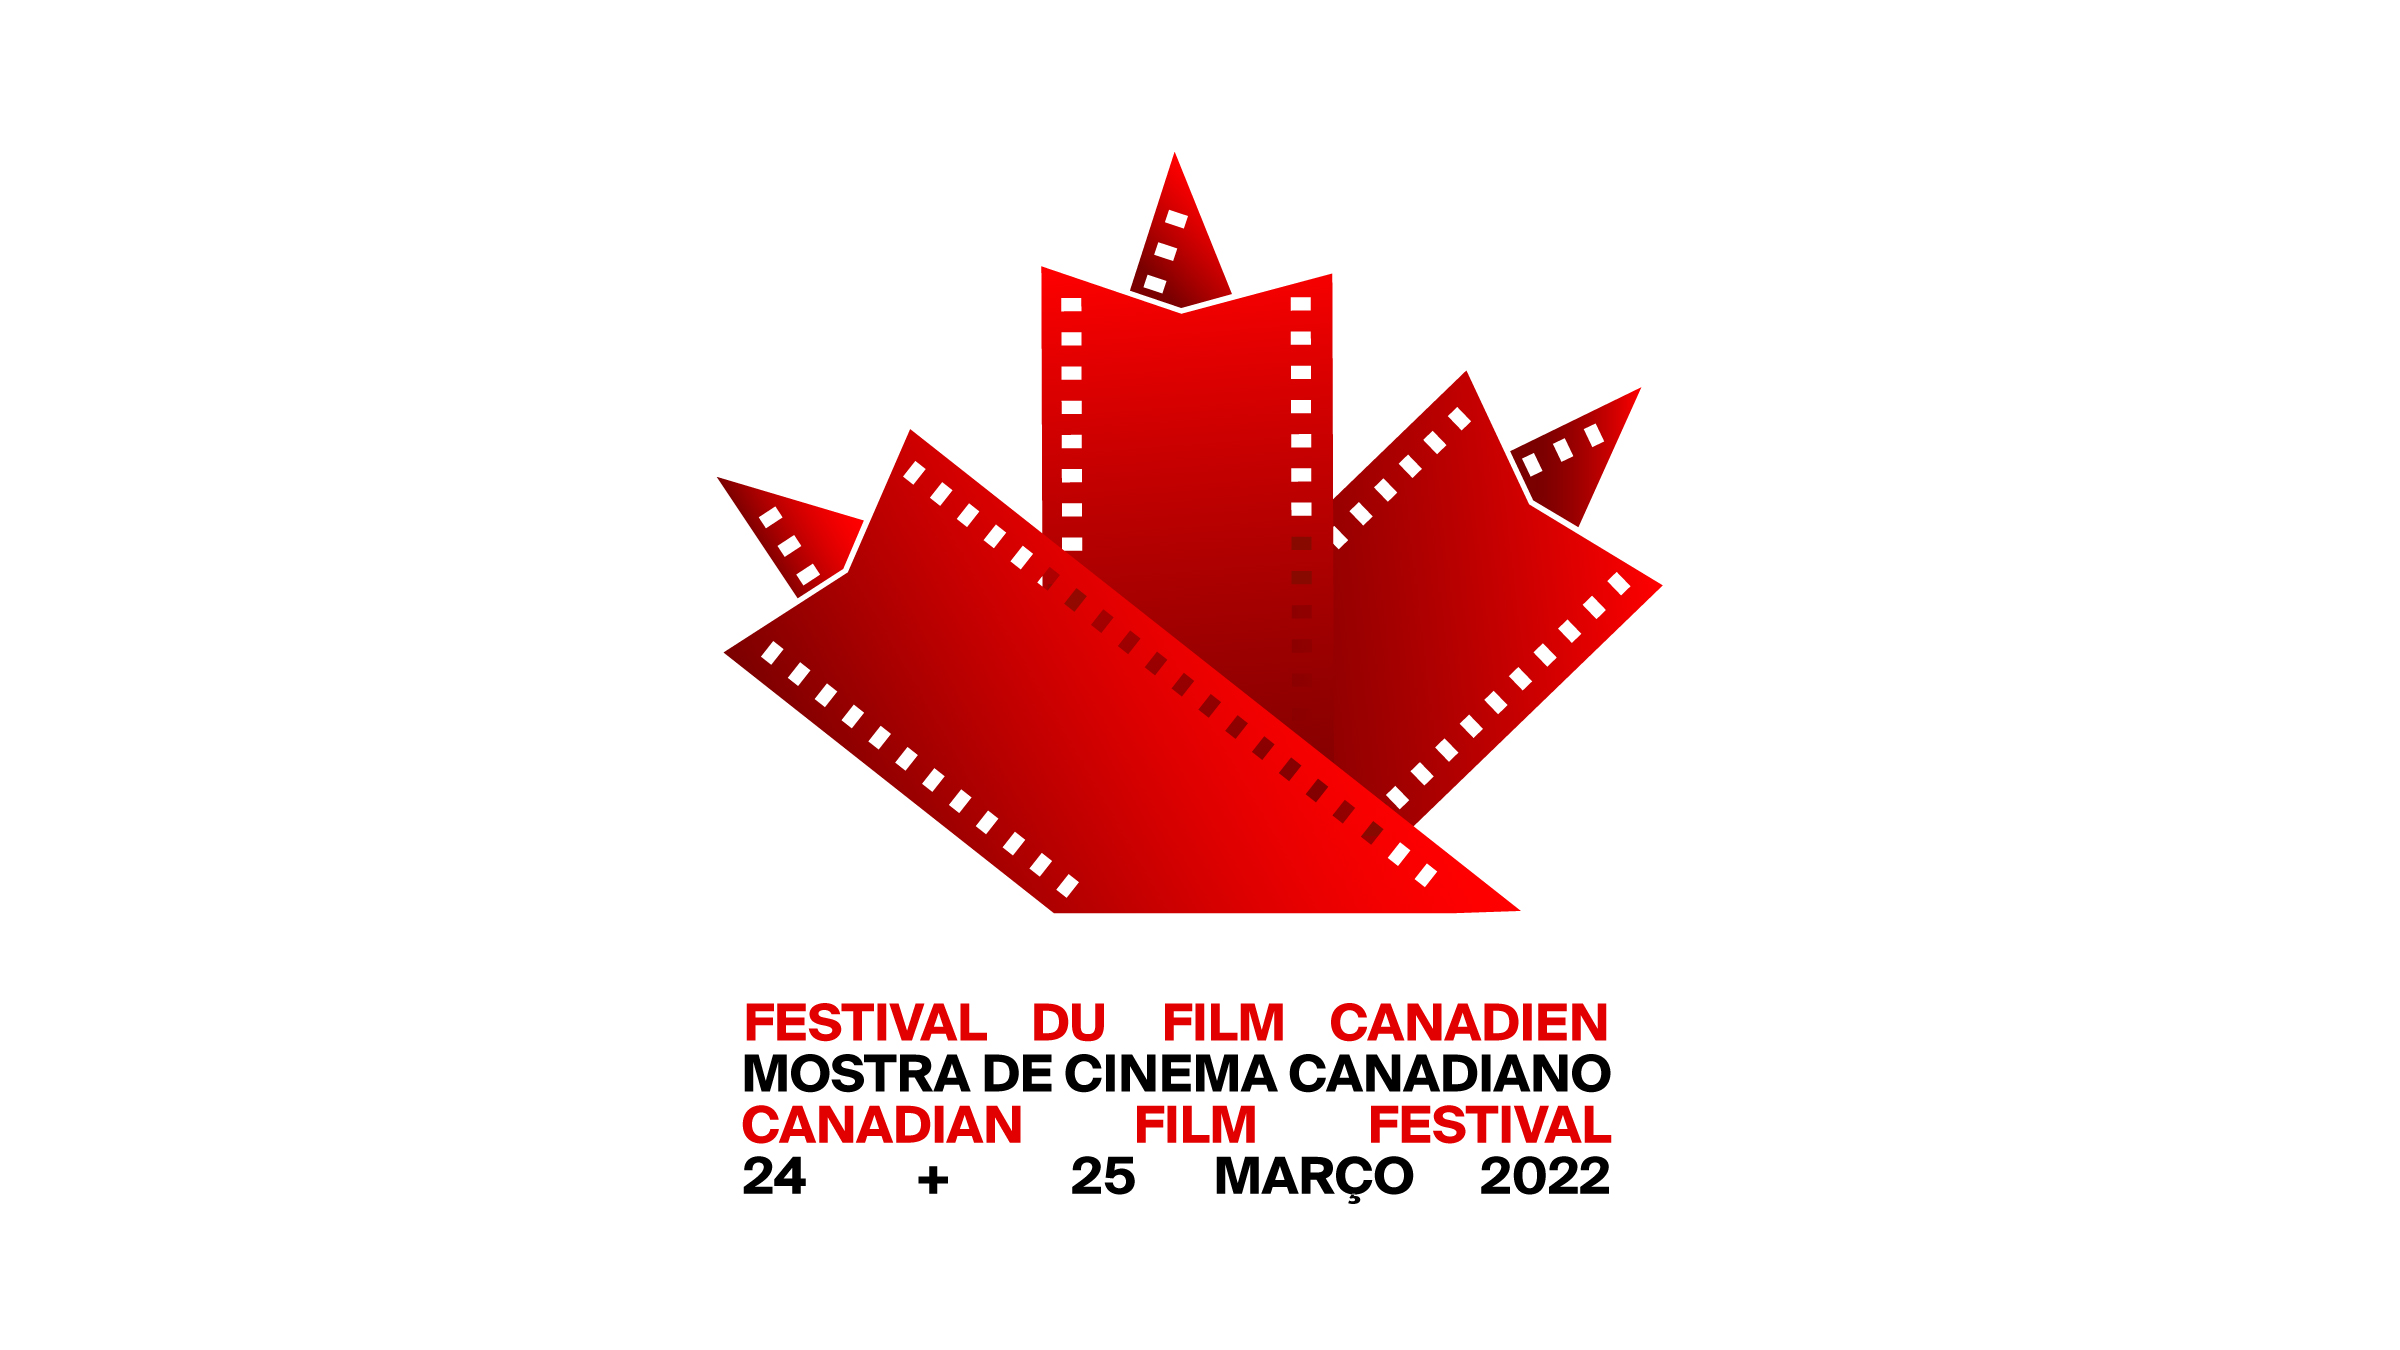 MOSTRA DE CINEMA CANADIANO 2022